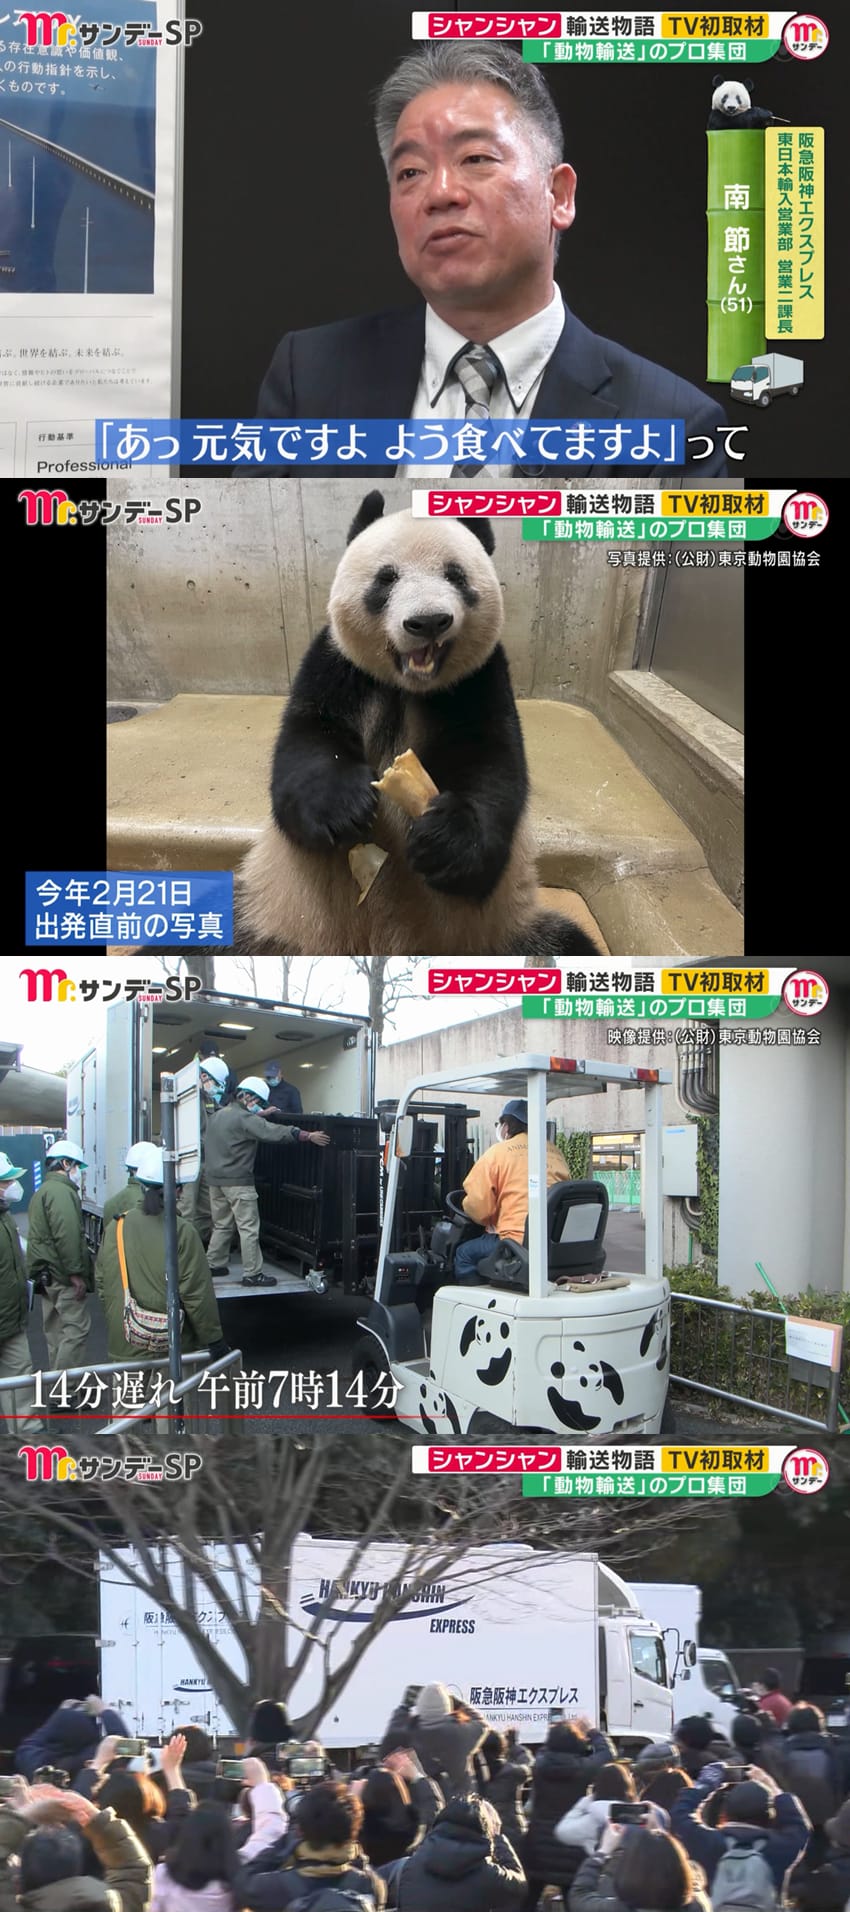 어제 일본 방송에서 처음으로 공개된 판다 샹샹 중국 반환 과정